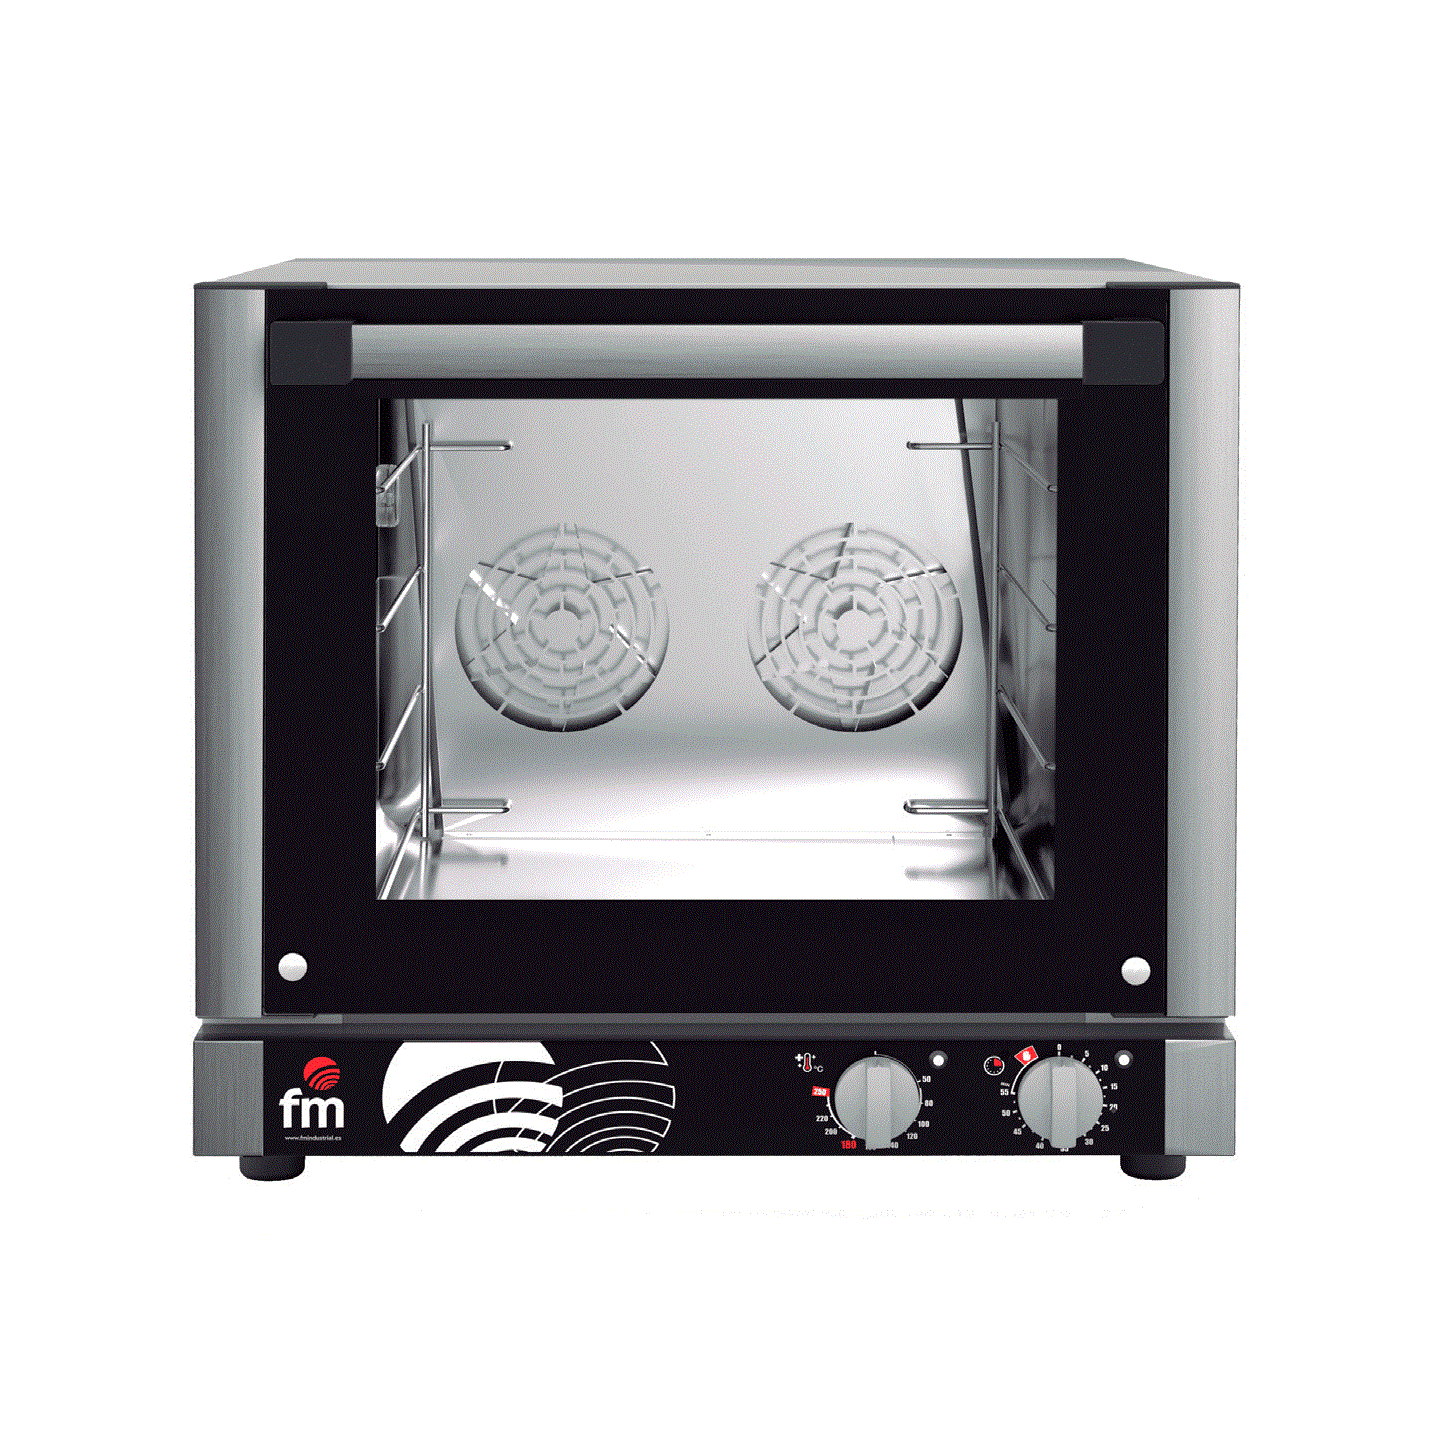 Конвекционная печь FM RX-424 H пароувлажнение